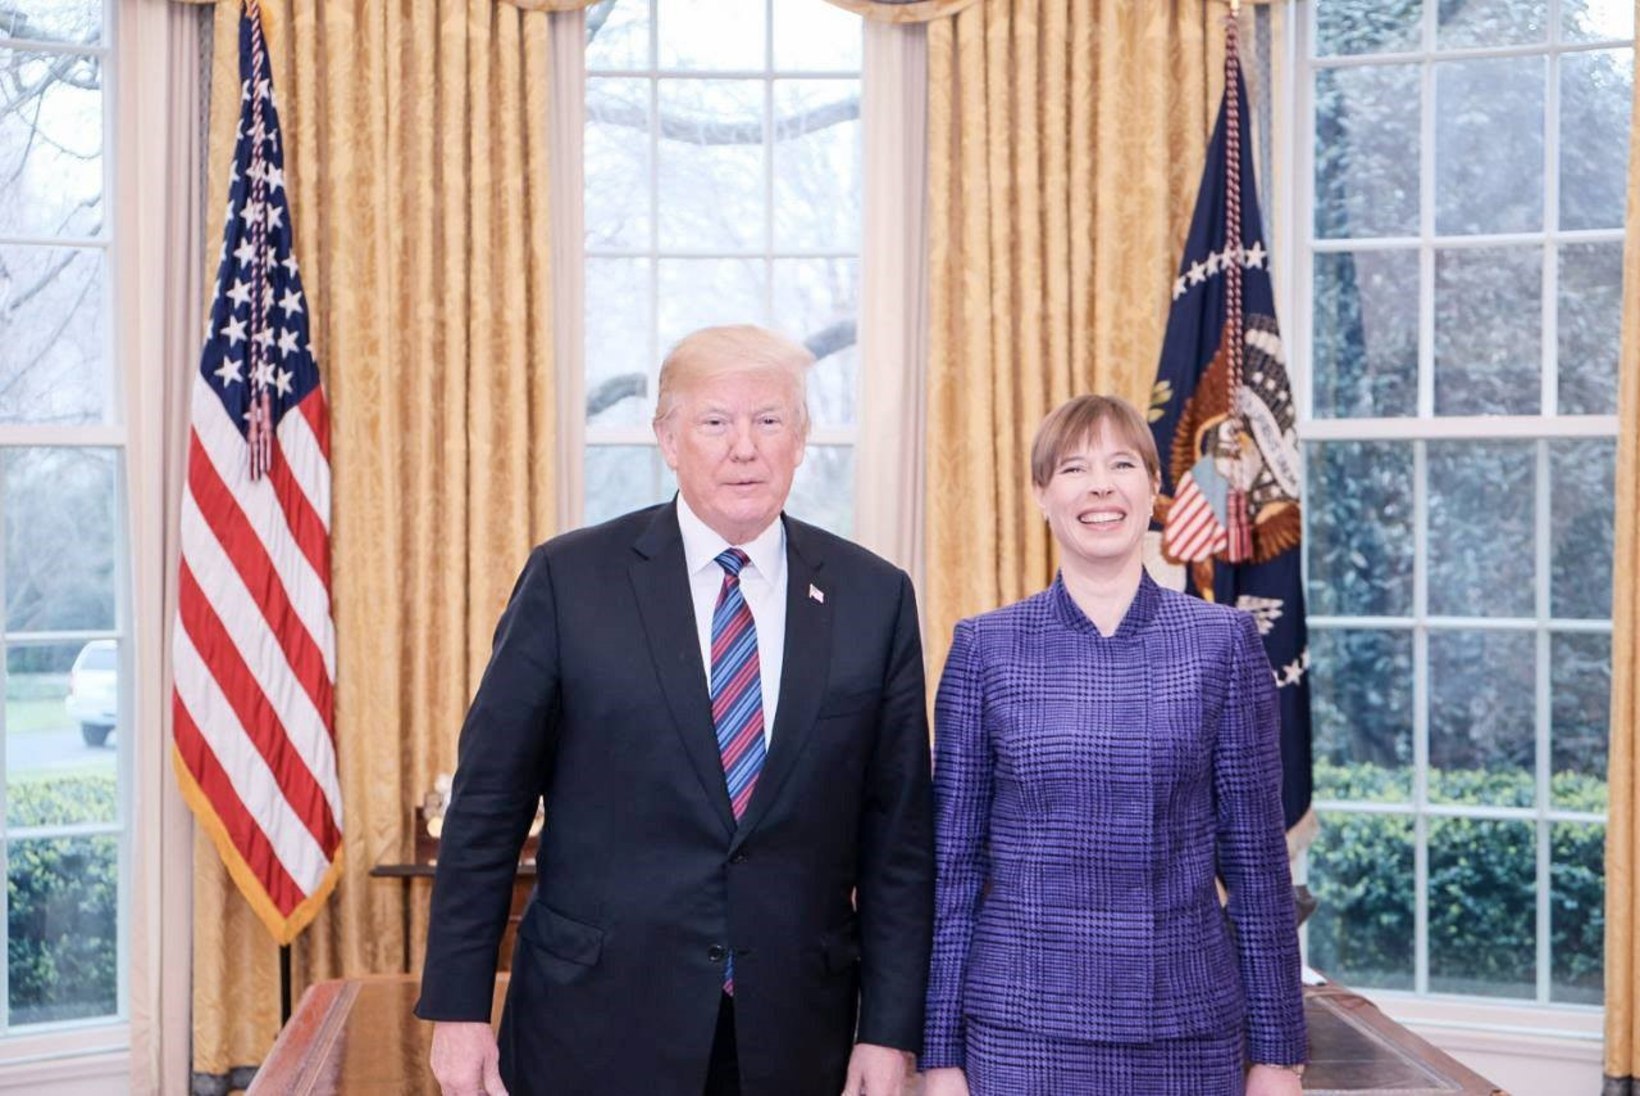 HEADUSE TELG: Kersti Kaljulaid andis Balti-USA koostööle uue nime